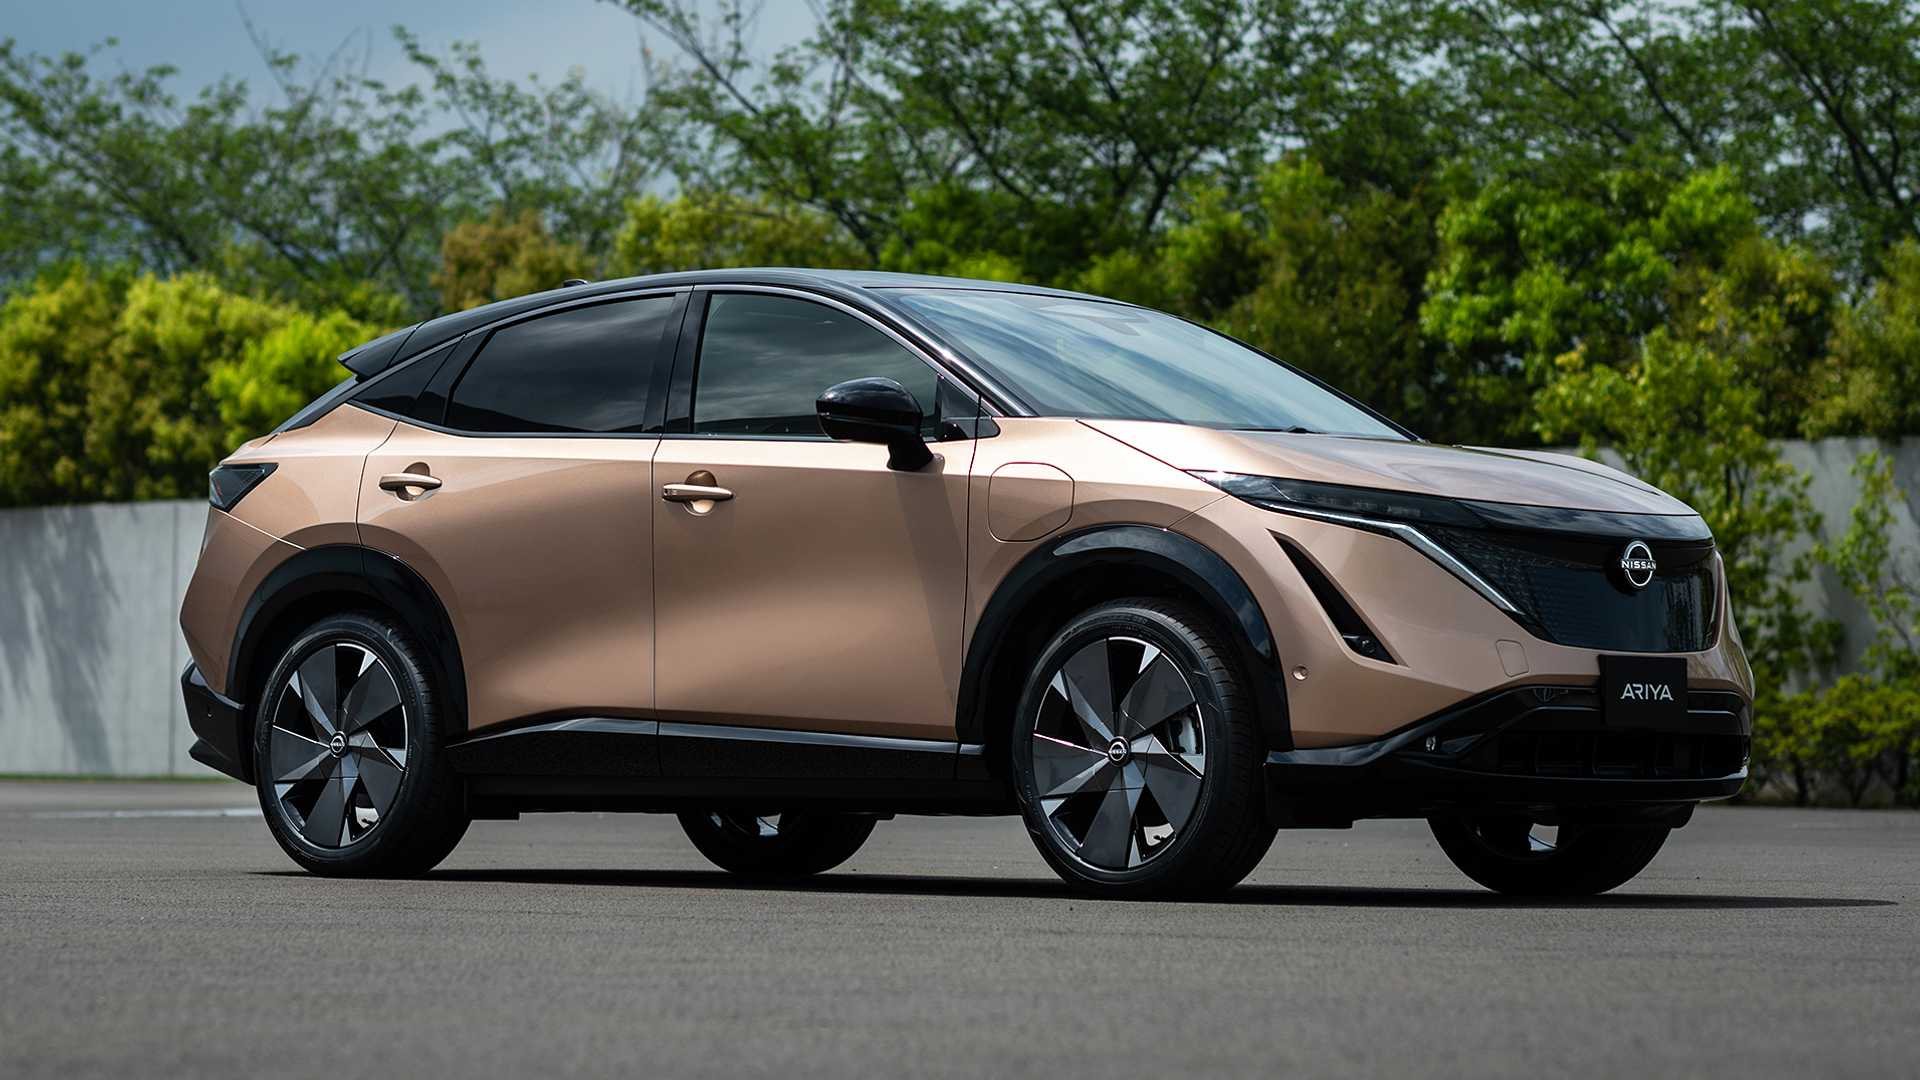 Nissan nhá hàng SUV mới: Có thể to ngang Hyundai Tucson, thiết kế hầm hố - Ảnh 1.